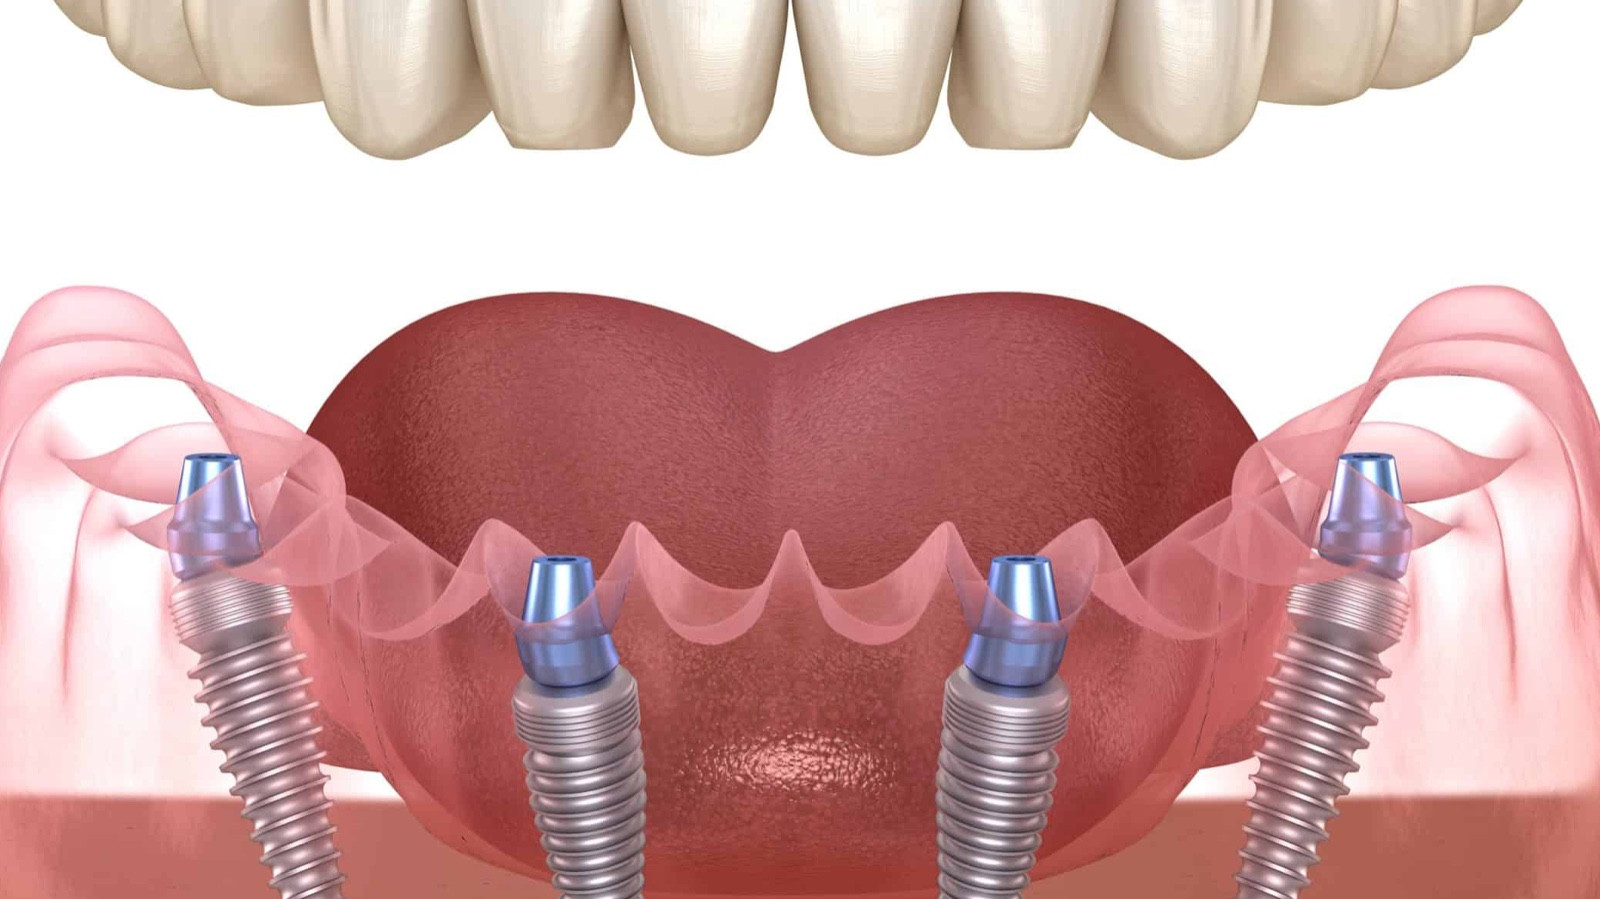 Особенности современной стоматологии